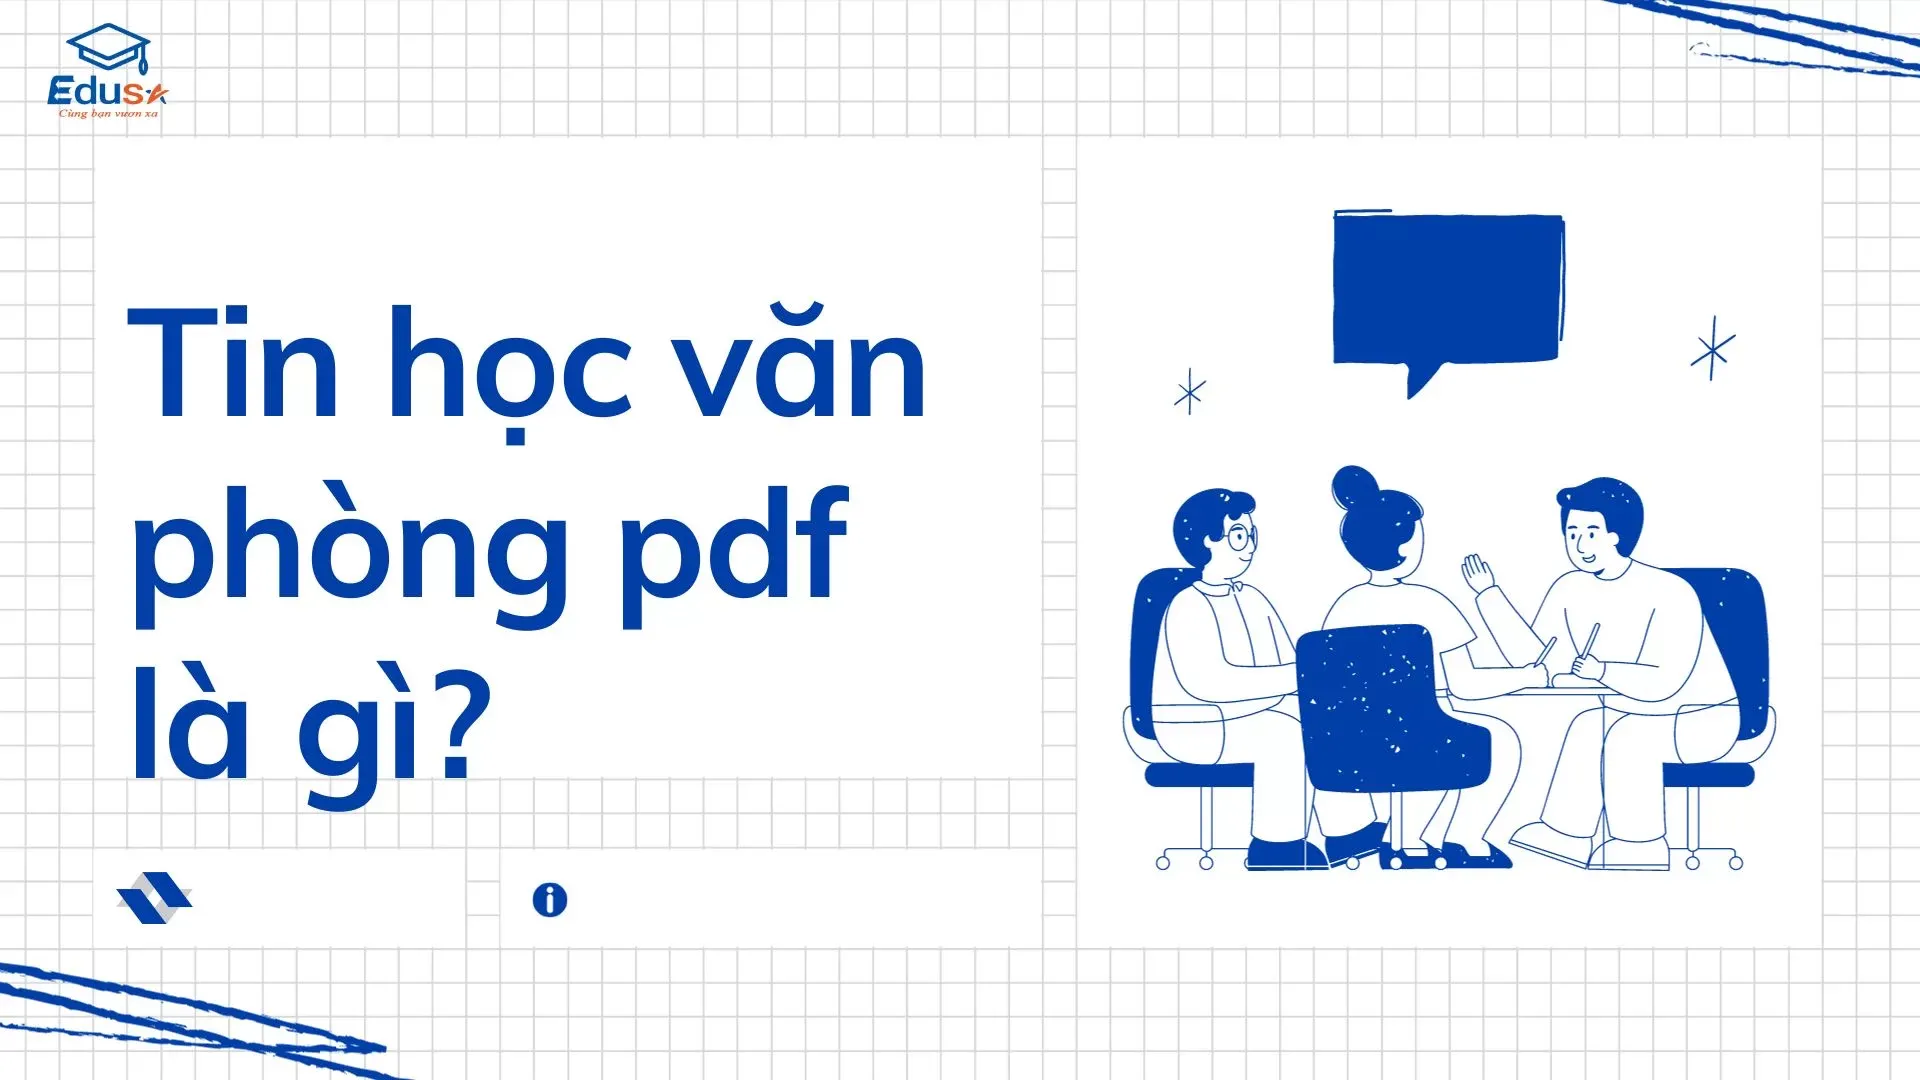 Tin học văn phòng pdf là gì?